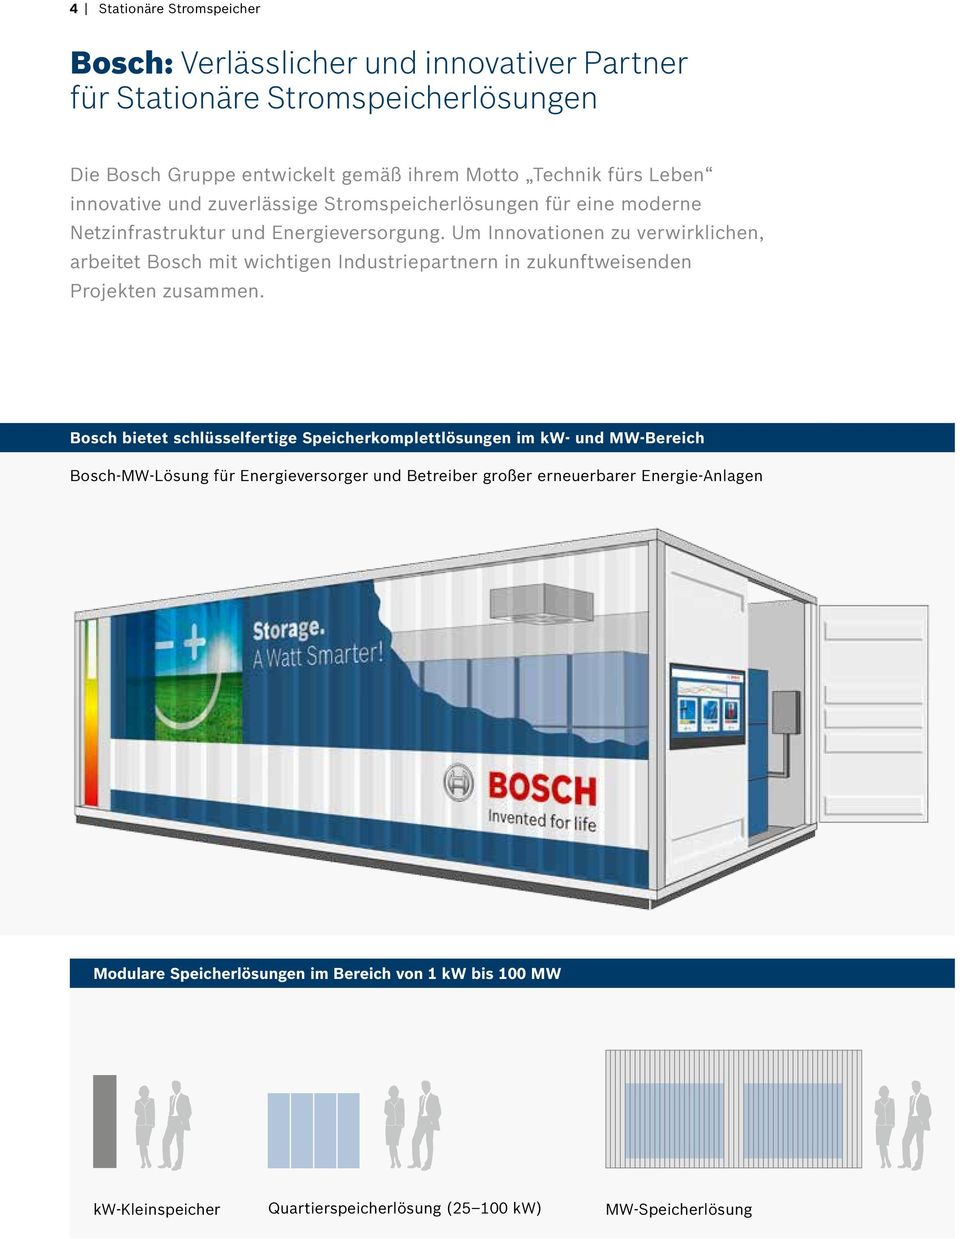 Um Innovationen zu verwirklichen, arbeitet Bosch mit wichtigen Industriepartnern in zukunftweisenden Projekten zusammen.